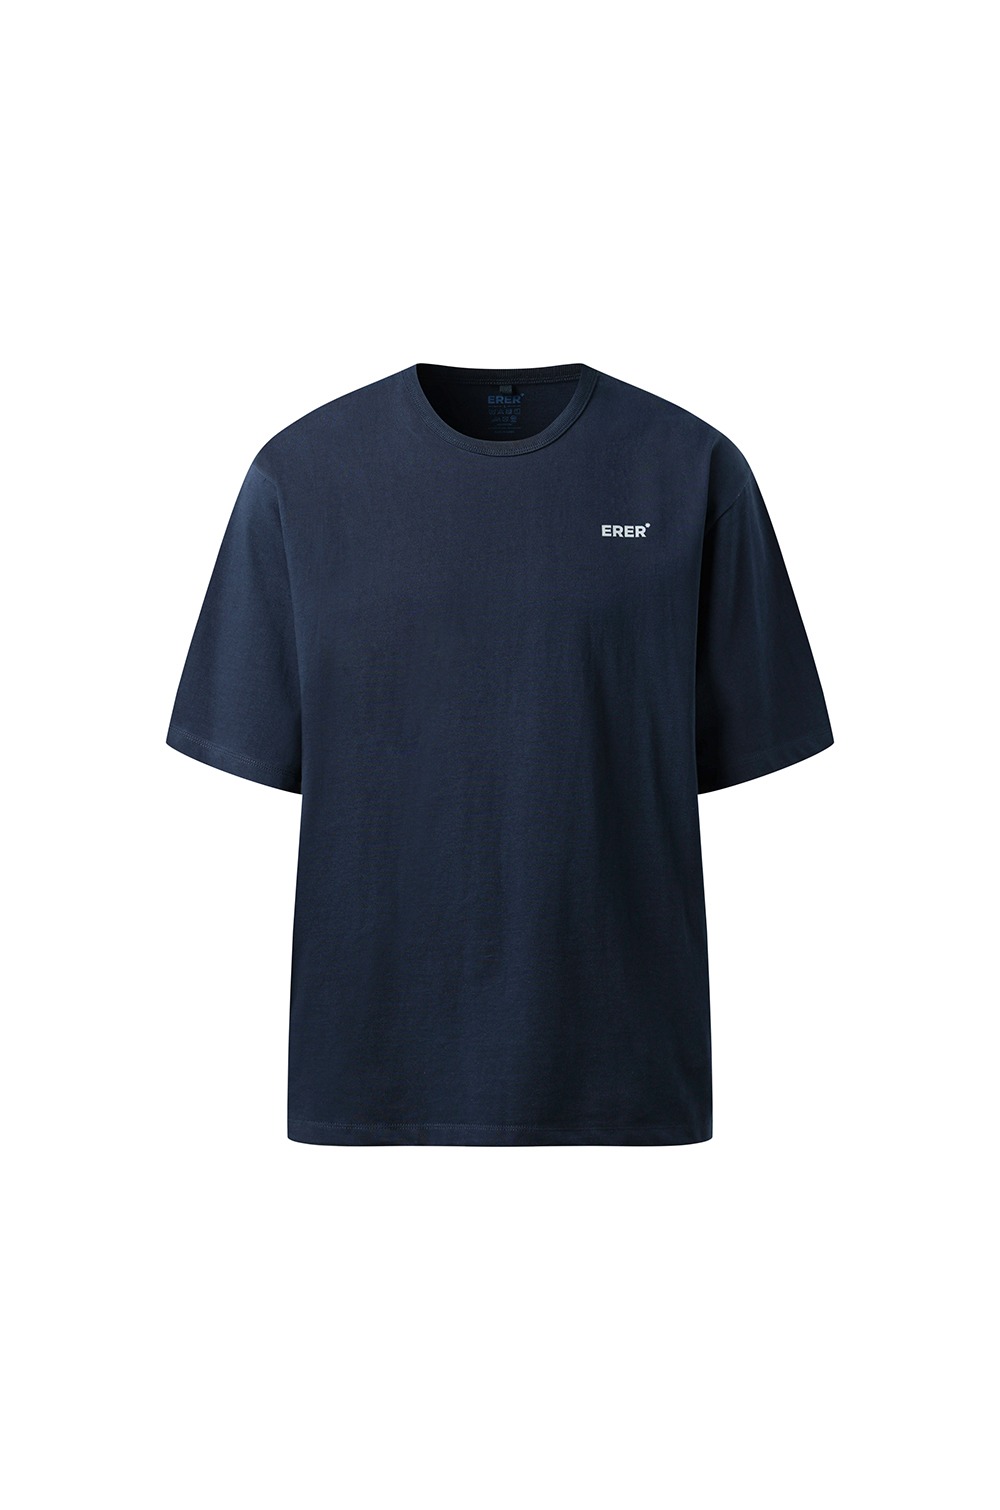 [UN] Basic logo t-shirt - Navy